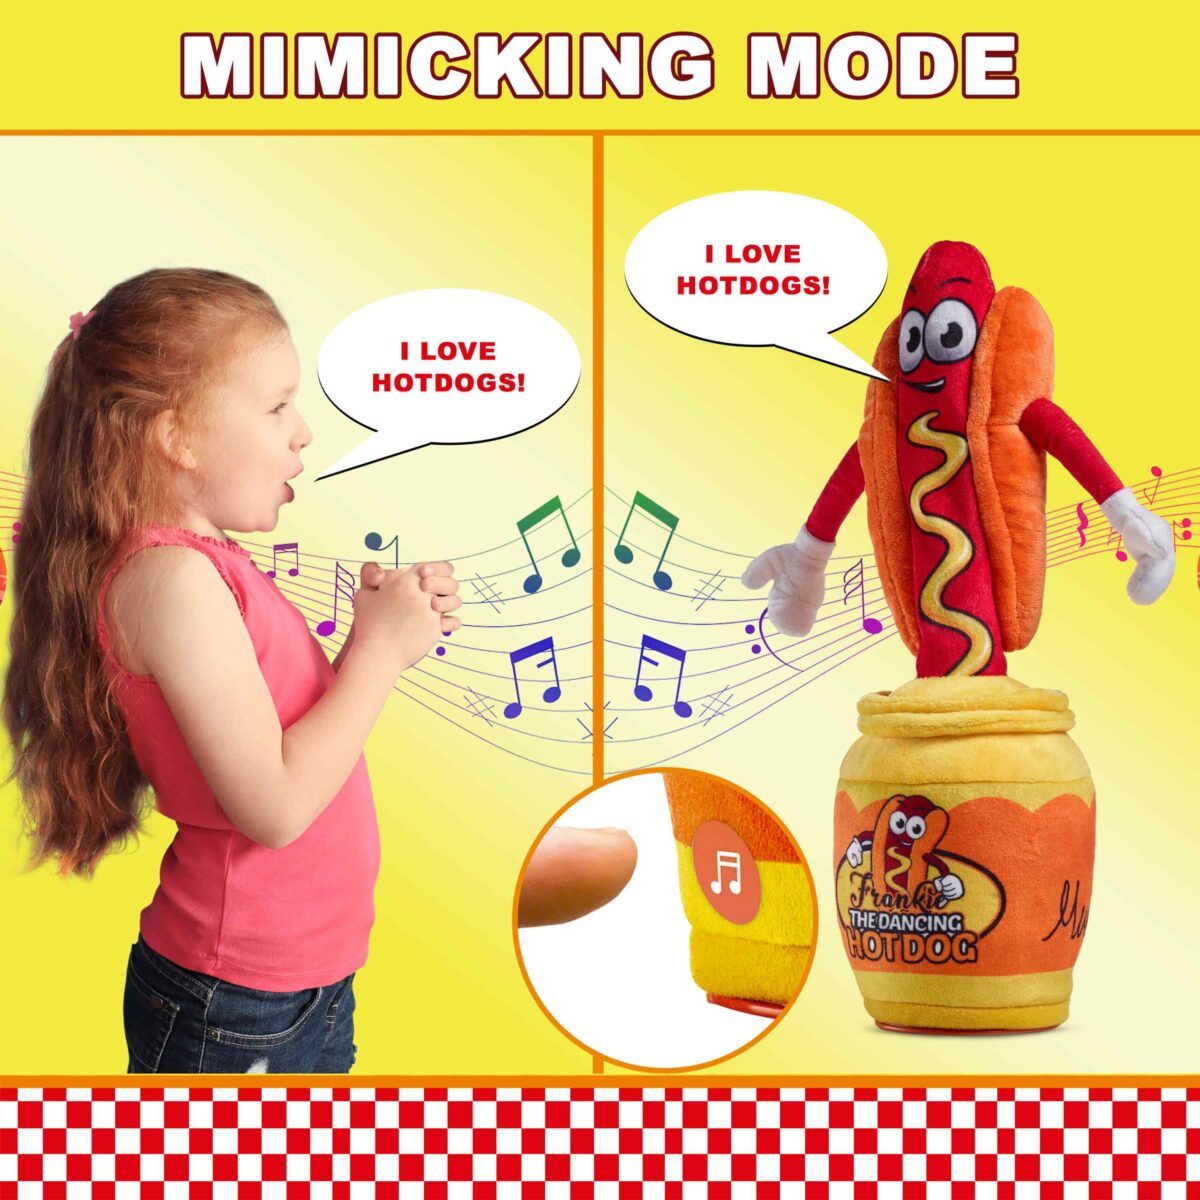 "dancing hotdog dancing hotdog plush hot dog dancing hotdog dancing dancing hot dogs"